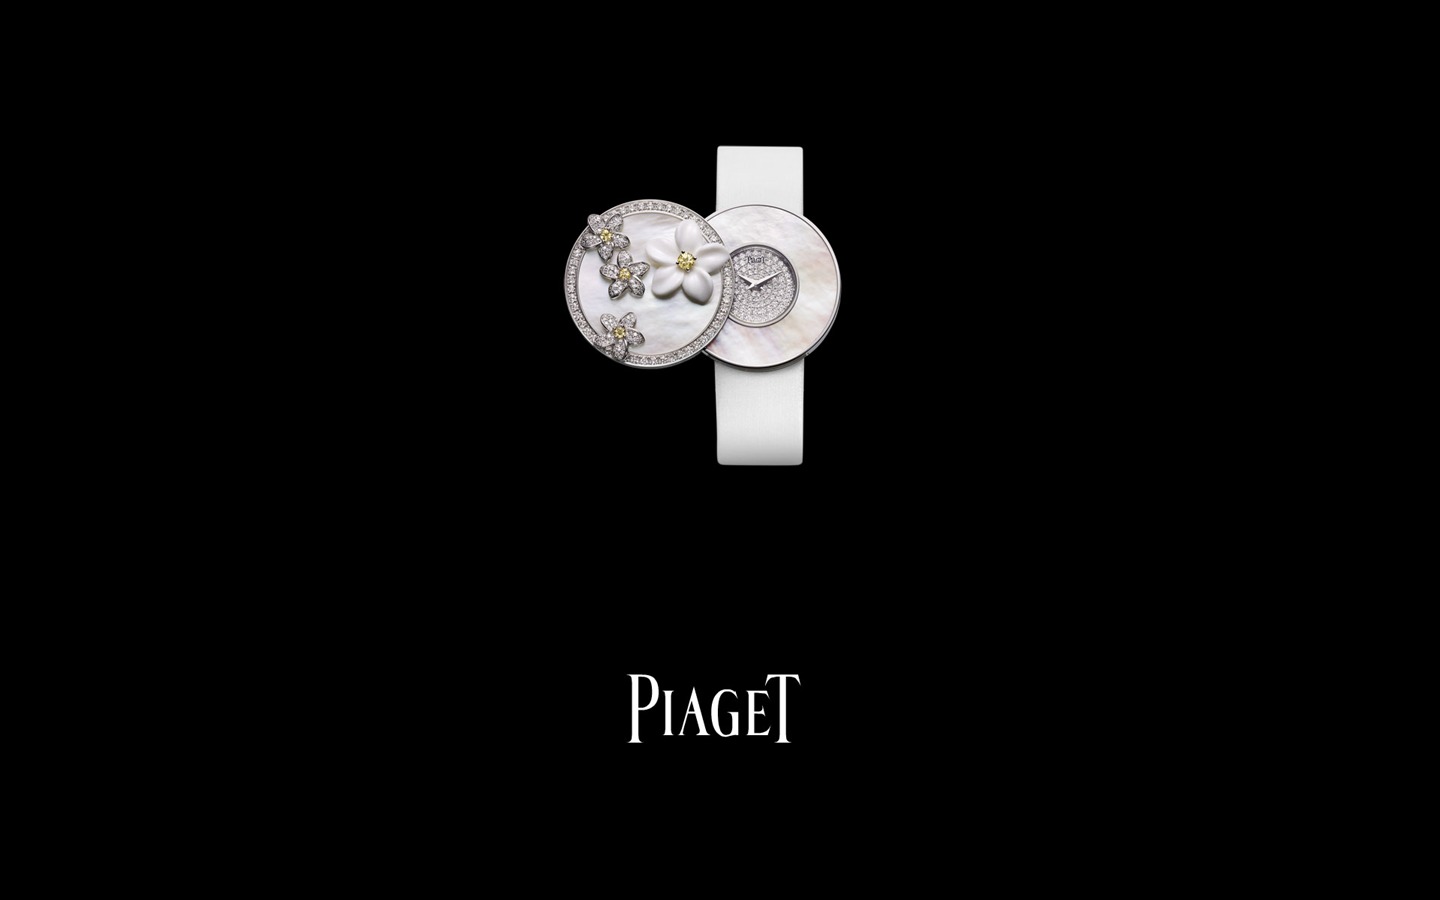 피아제 다이아몬드 시계 벽지 (4) #1 - 1440x900